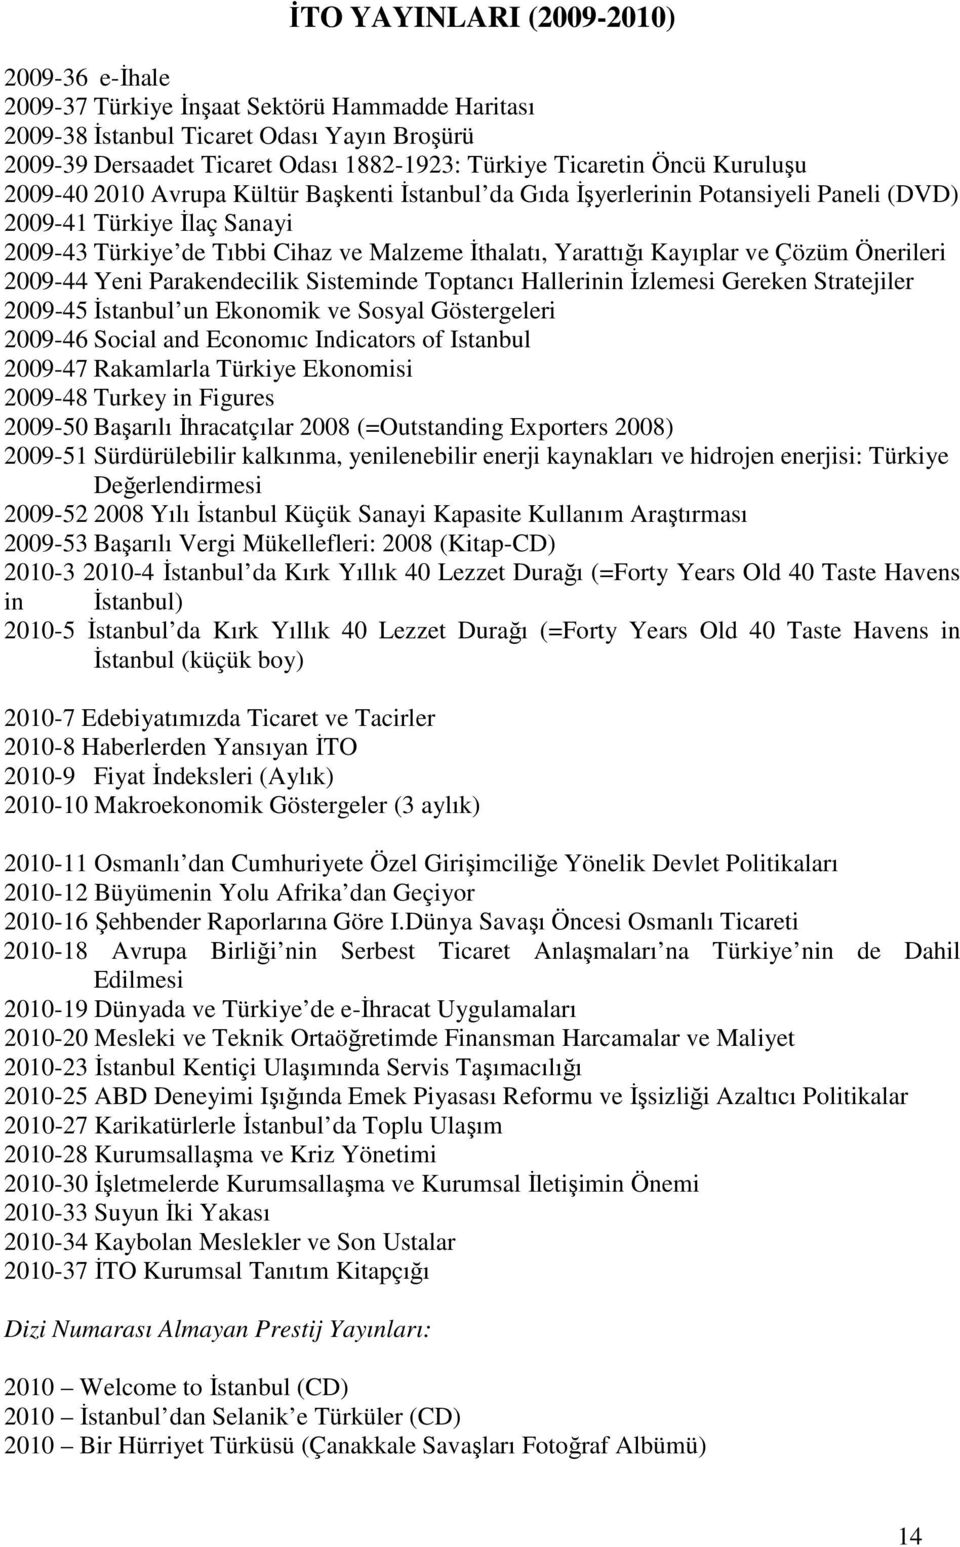 Kayıplar ve Çözüm Önerileri 2009-44 Yeni Parakendecilik Sisteminde Toptancı Hallerinin Đzlemesi Gereken Stratejiler 2009-45 Đstanbul un Ekonomik ve Sosyal Göstergeleri 2009-46 Social and Economıc